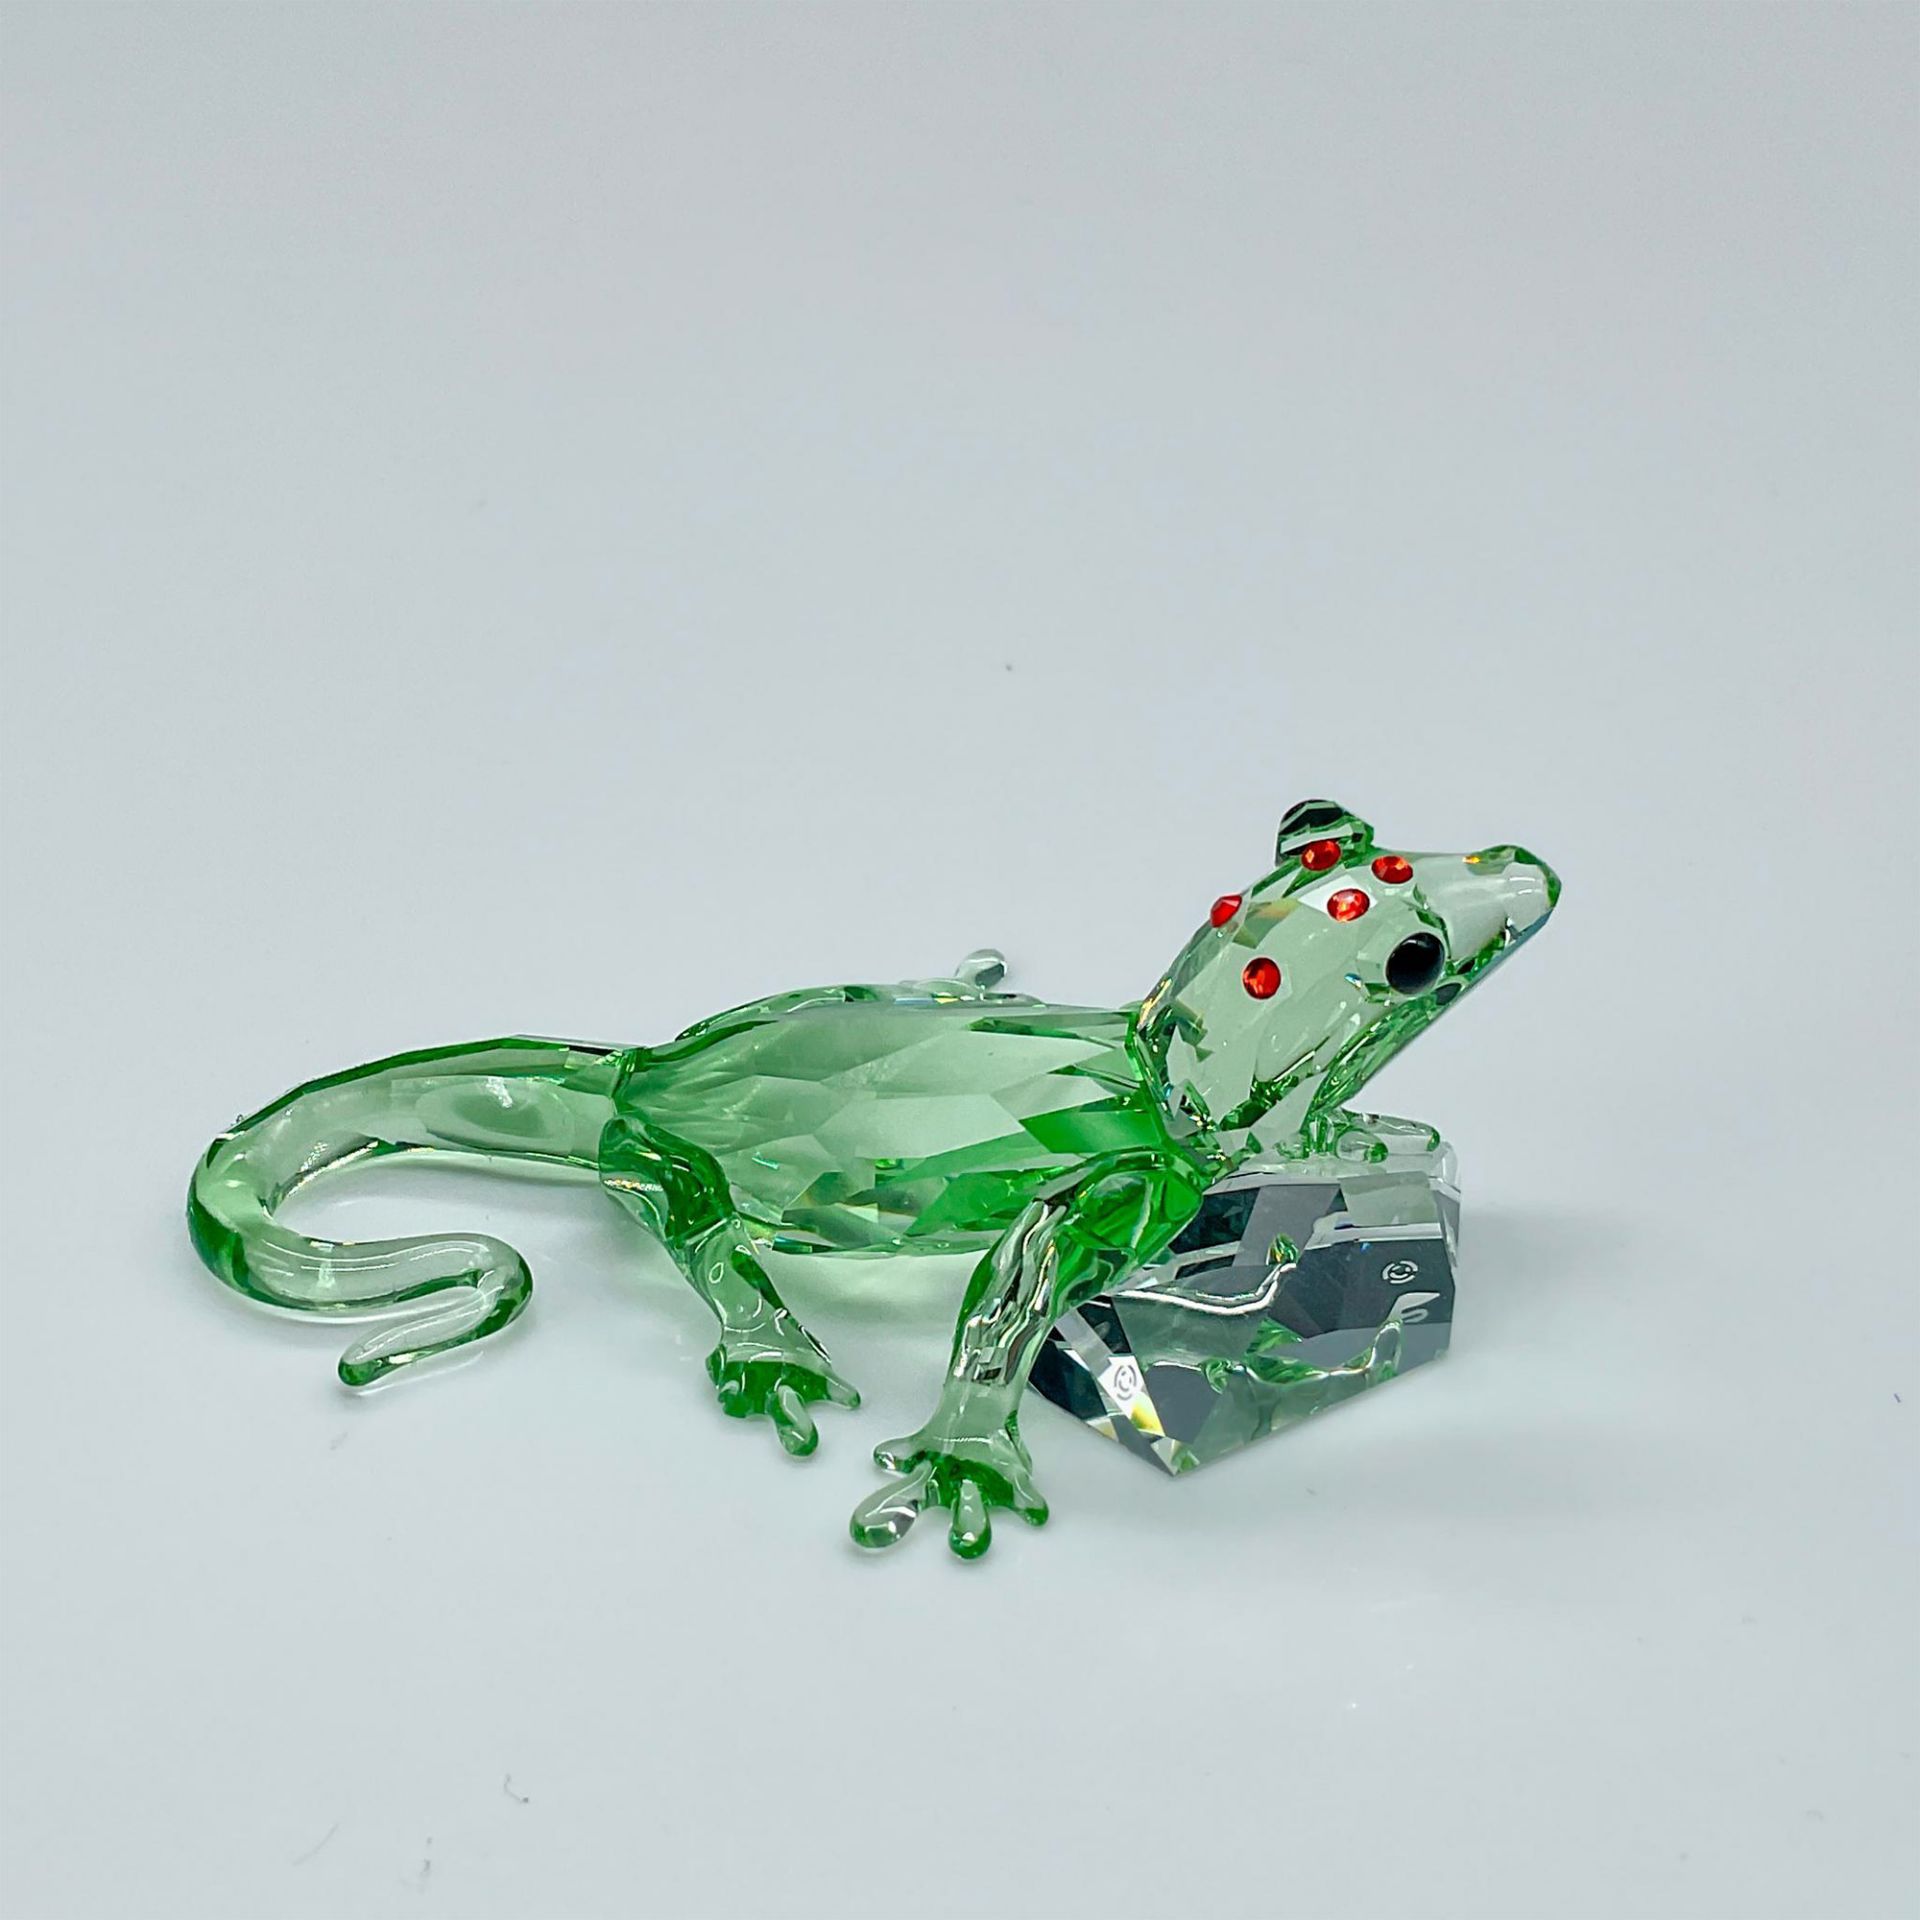 Swarovski Crystal Figurine, Gecko SCS Event Piece - Image 2 of 4